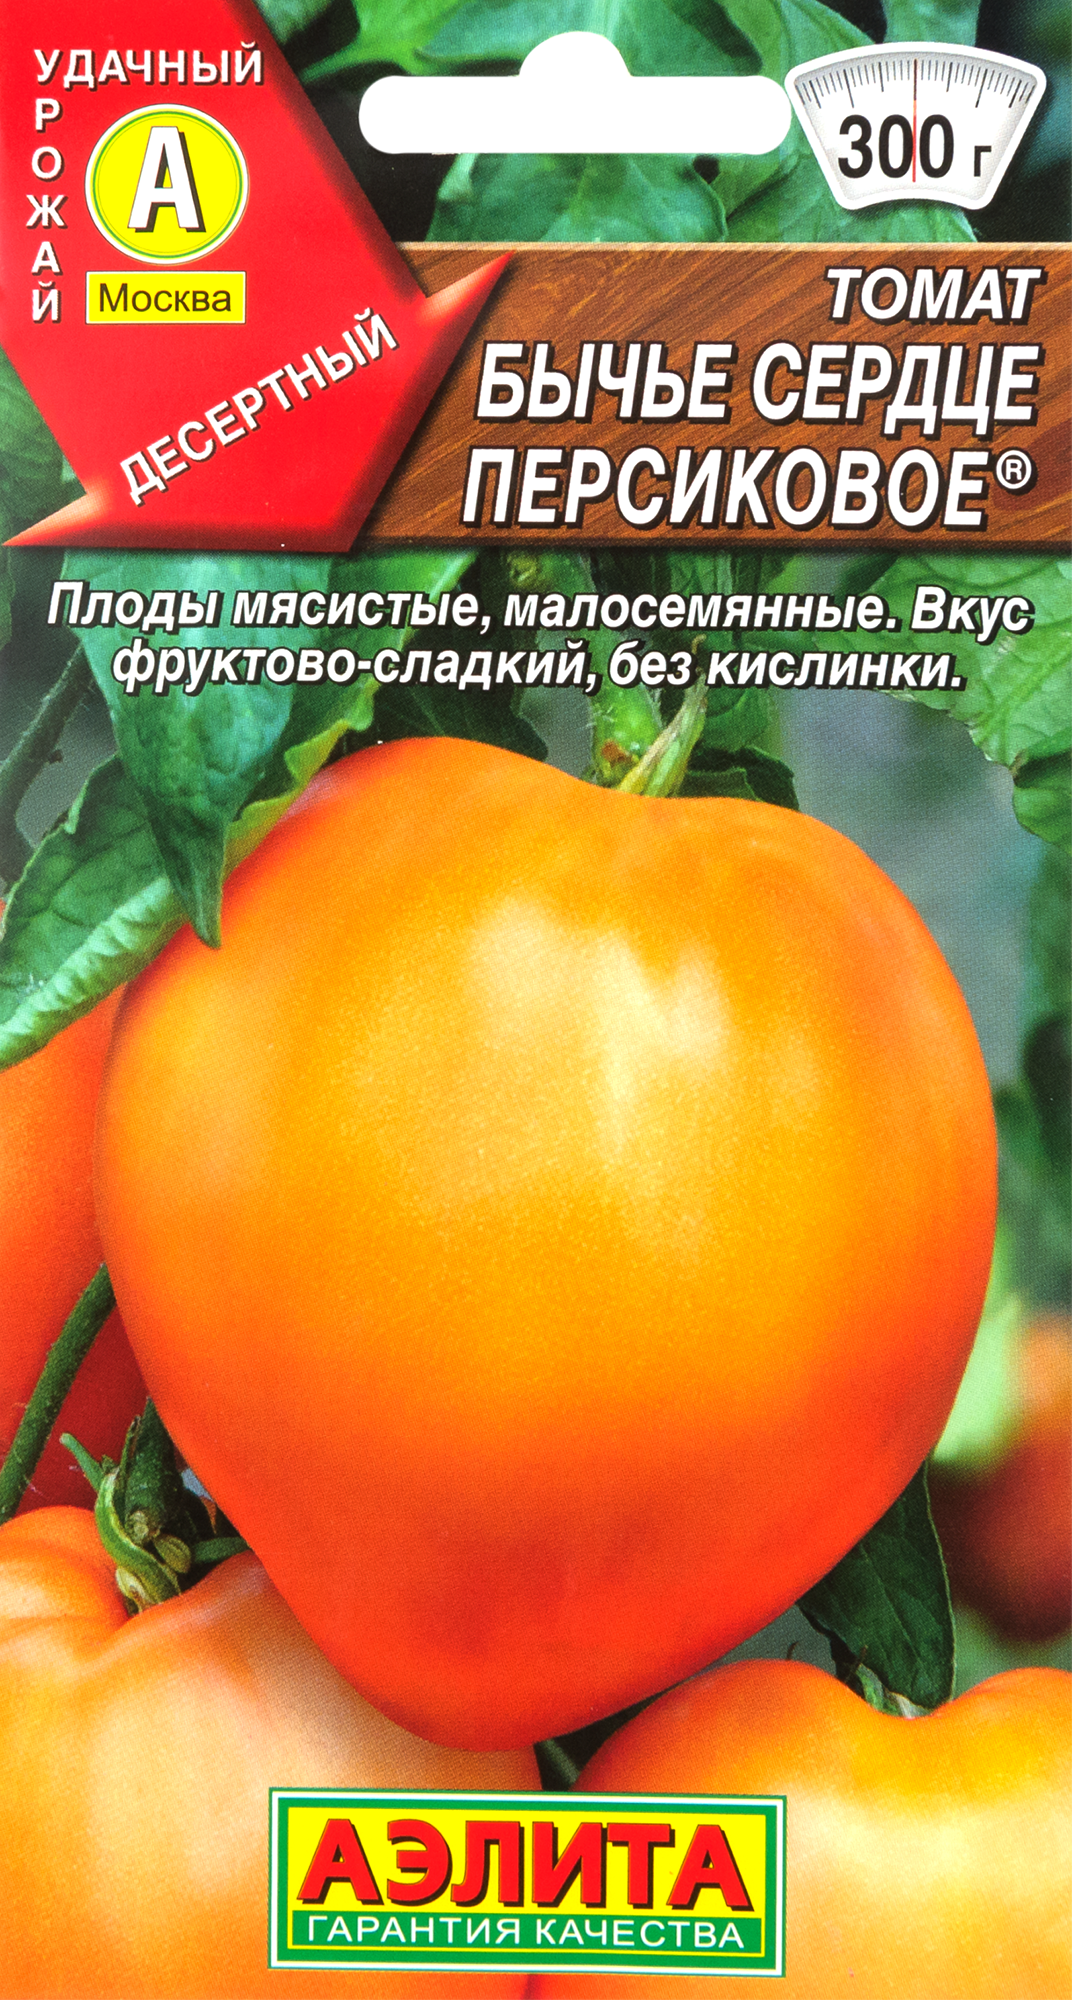 Семена Томат «Бычье сердце персиковое» в Москве – купить по низкой цене винтернет-магазине Леруа Мерлен